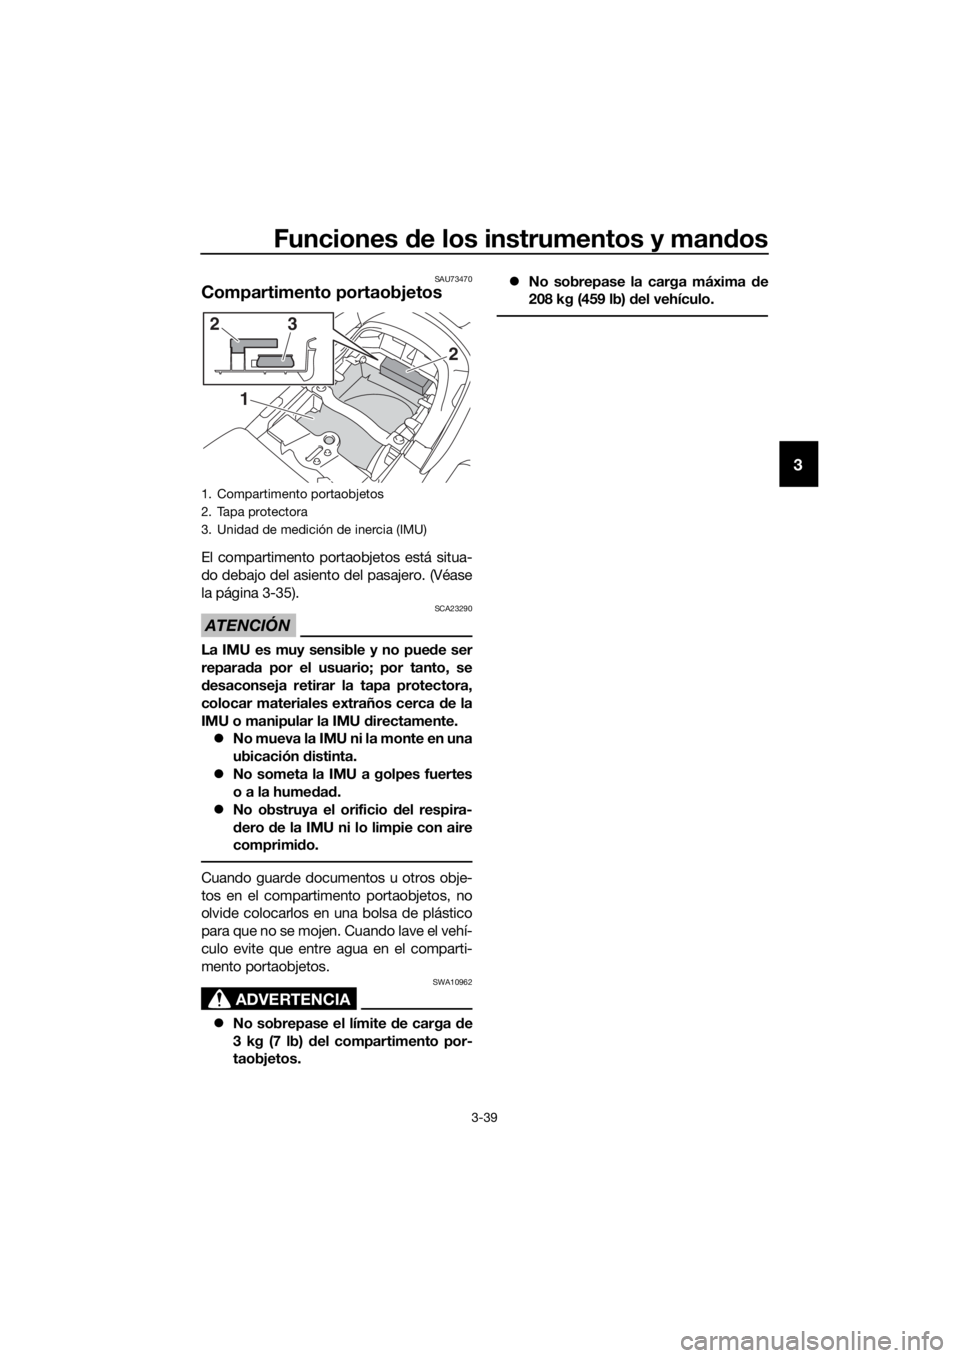 YAMAHA FJR1300AS 2018  Manuale de Empleo (in Spanish) Funciones de los instrumentos y man dos
3-39
3
SAU73470
Compartimento portaobjetos
El compartimento port aobjetos está situa-
do debajo del asiento del pasajero. (Véase
la página 3-35).
ATENCIÓN
S